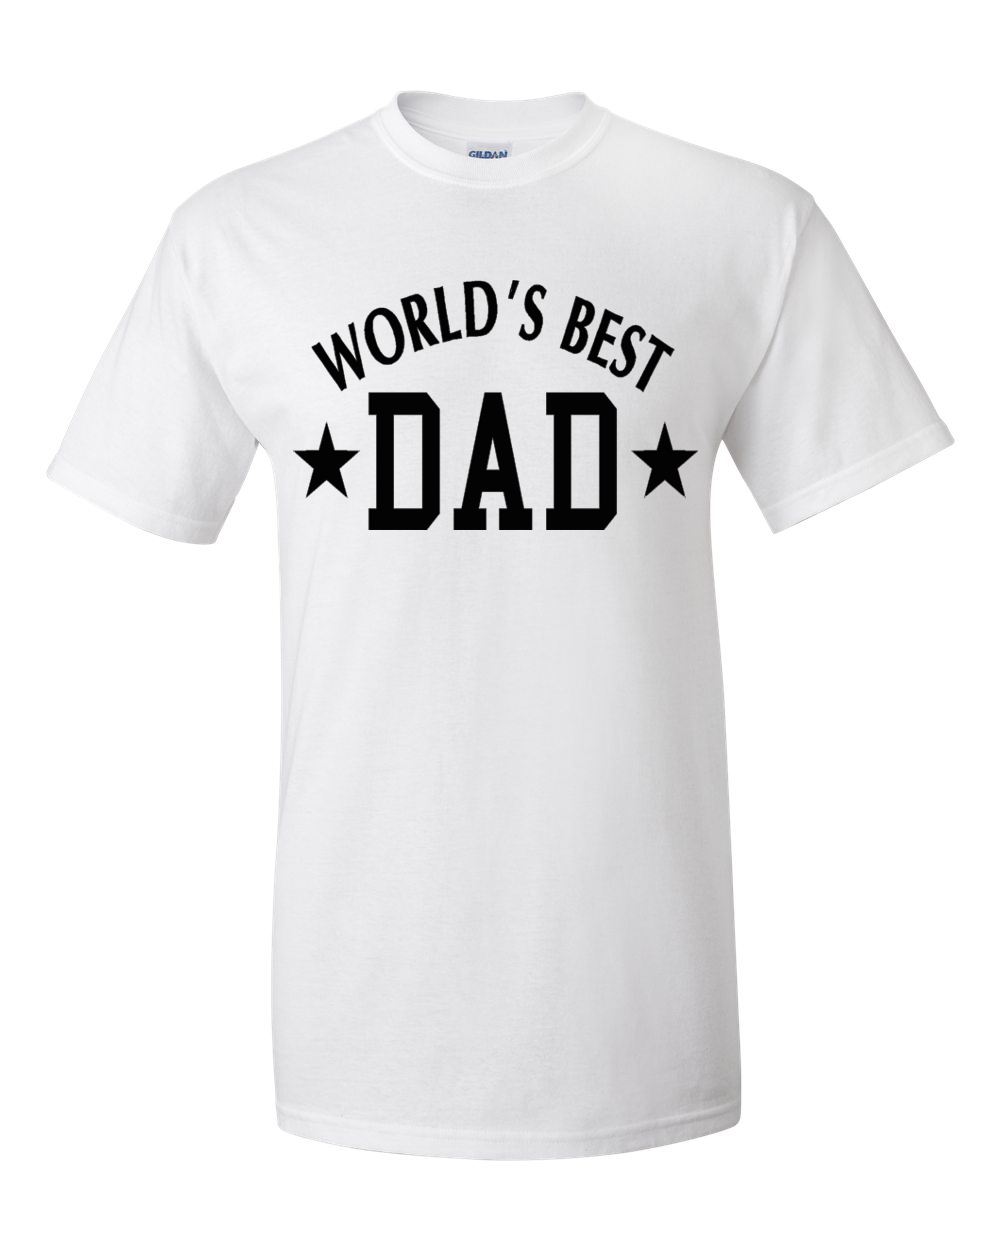 I am Daddy футболка. The Walking dad футболка белая. Мужская футболка best dad ever. Футболка think Global.